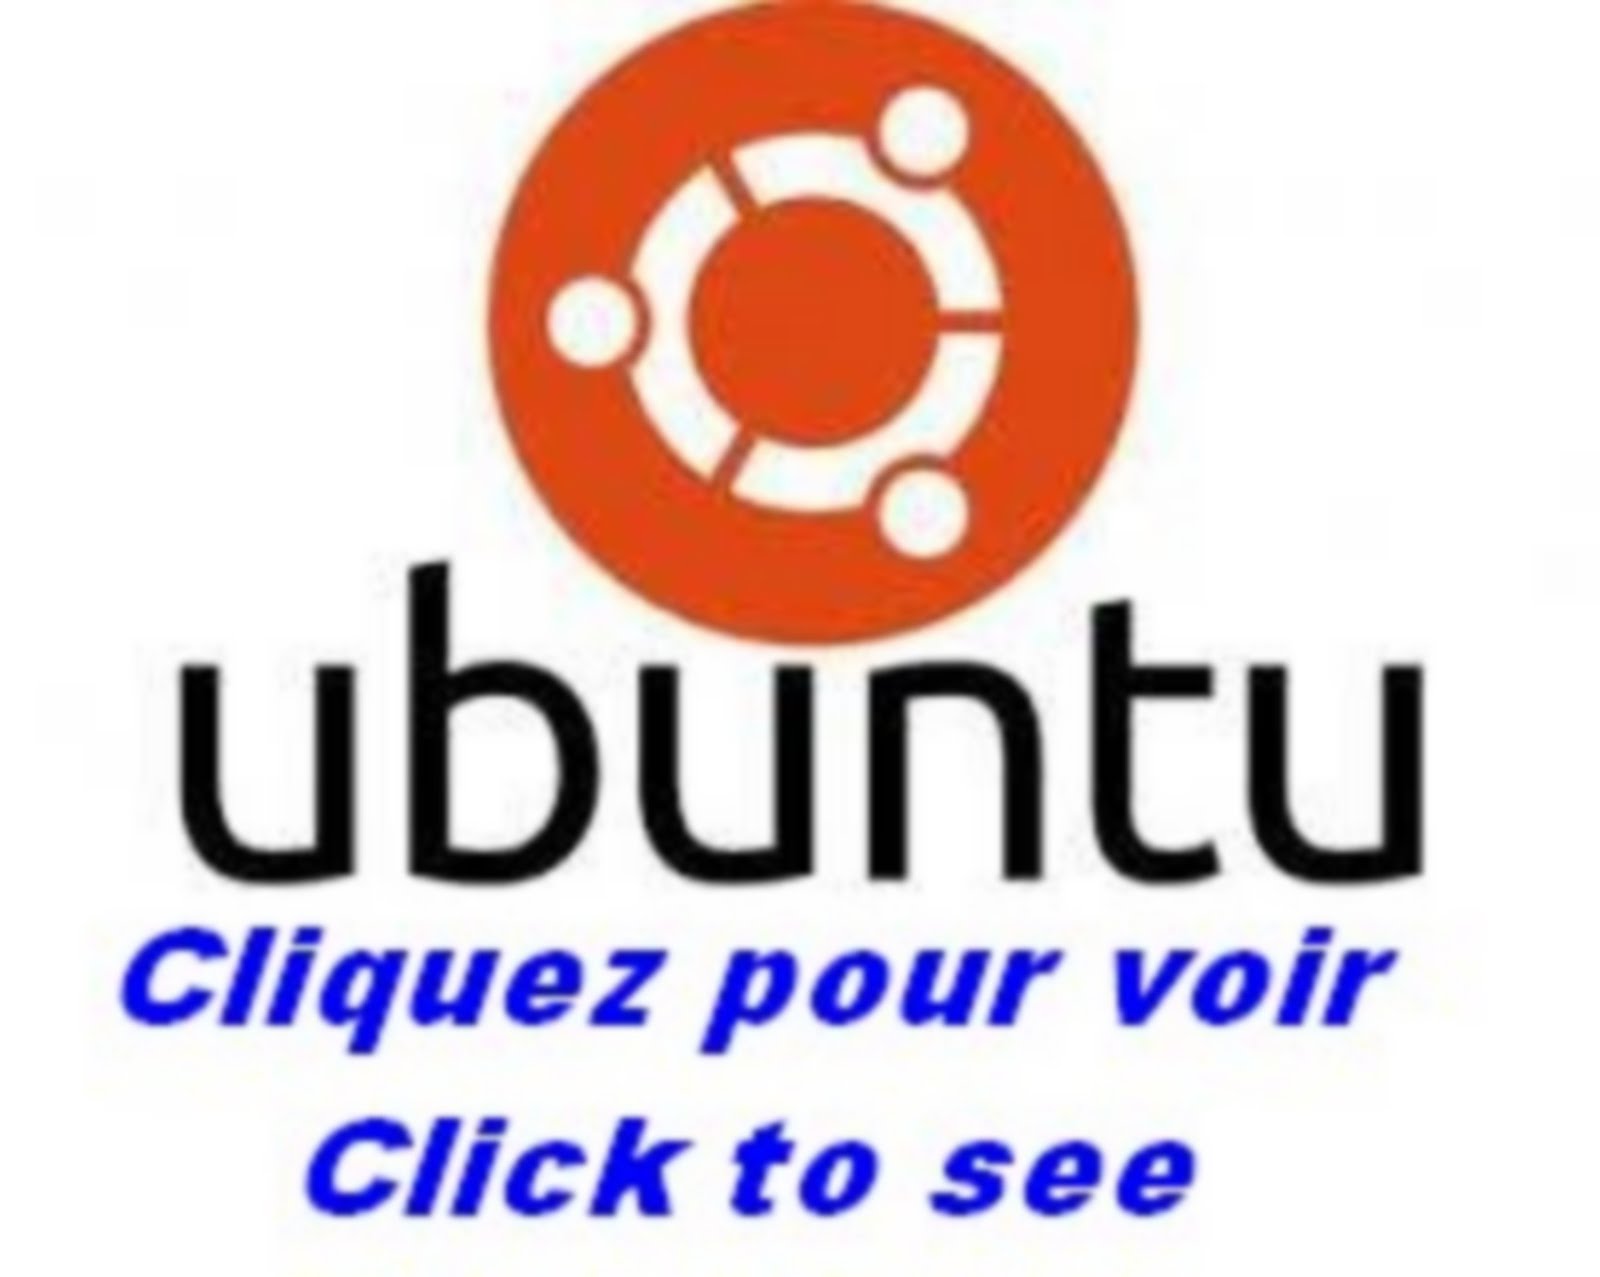 Ubuntu première étape pour affronter LINUX. Ubuntu incontournable pour s'initier à LINUX.